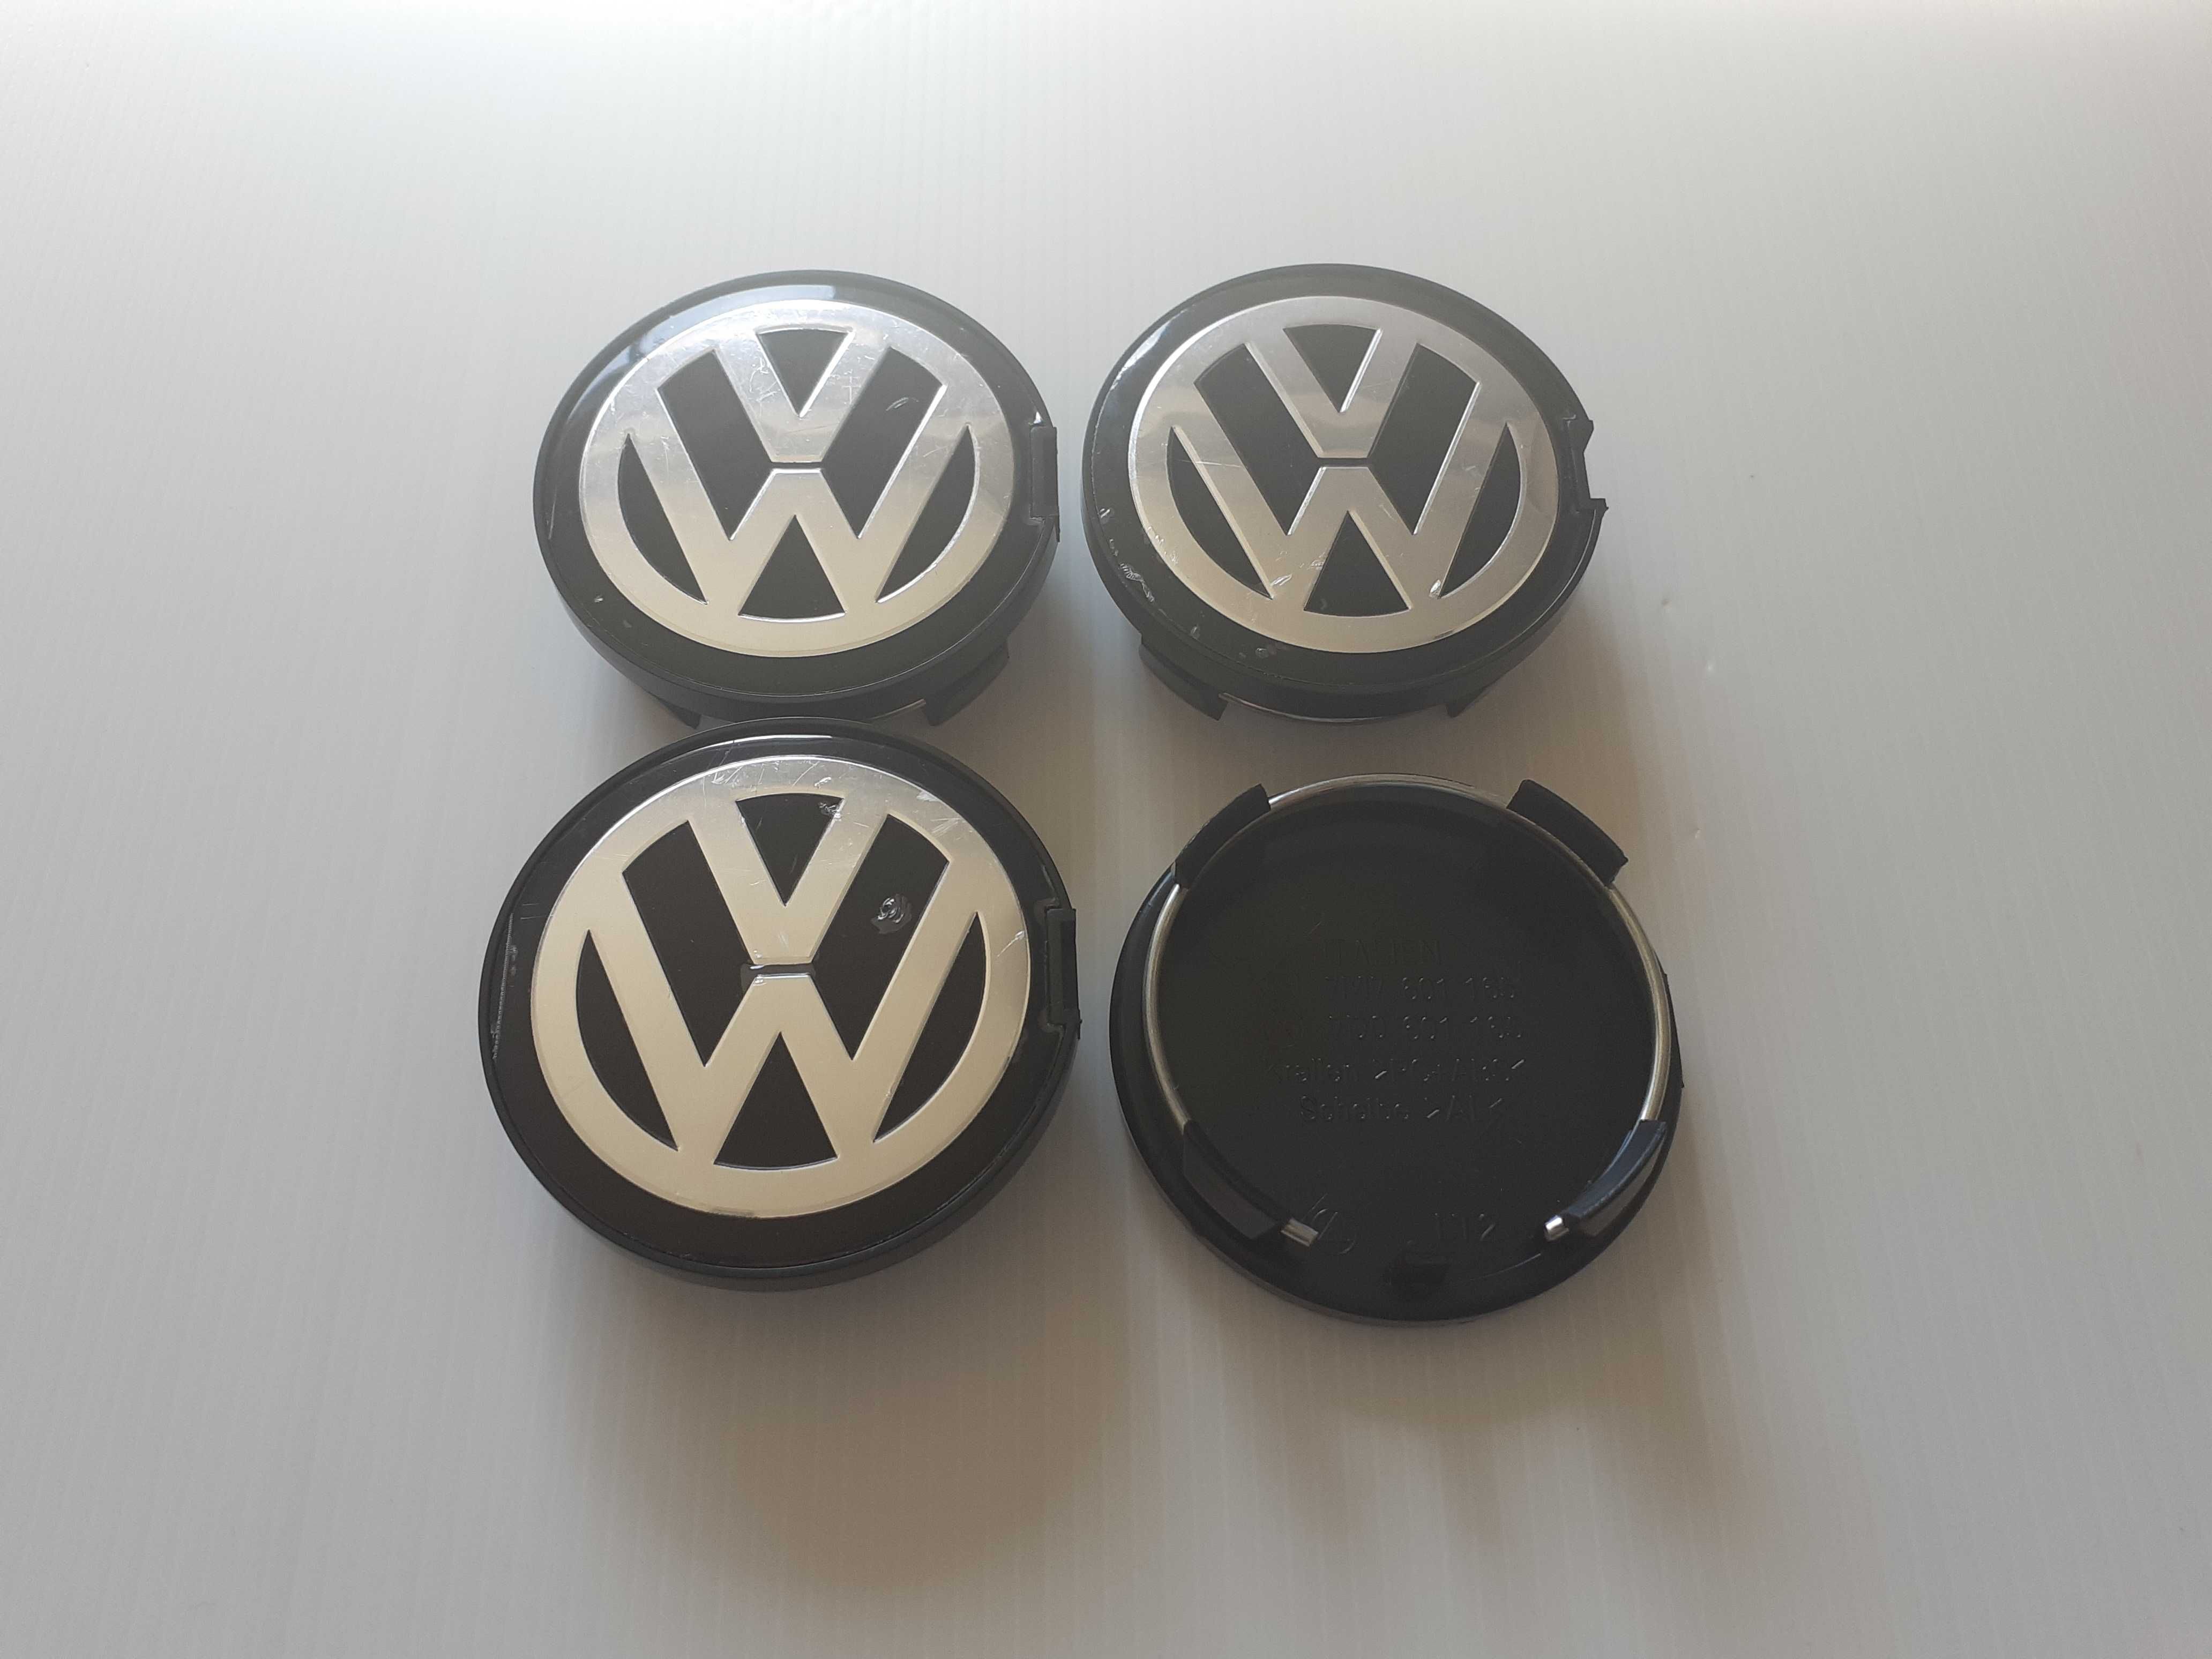 Centros/tampas de jante completos VW Volkswagen